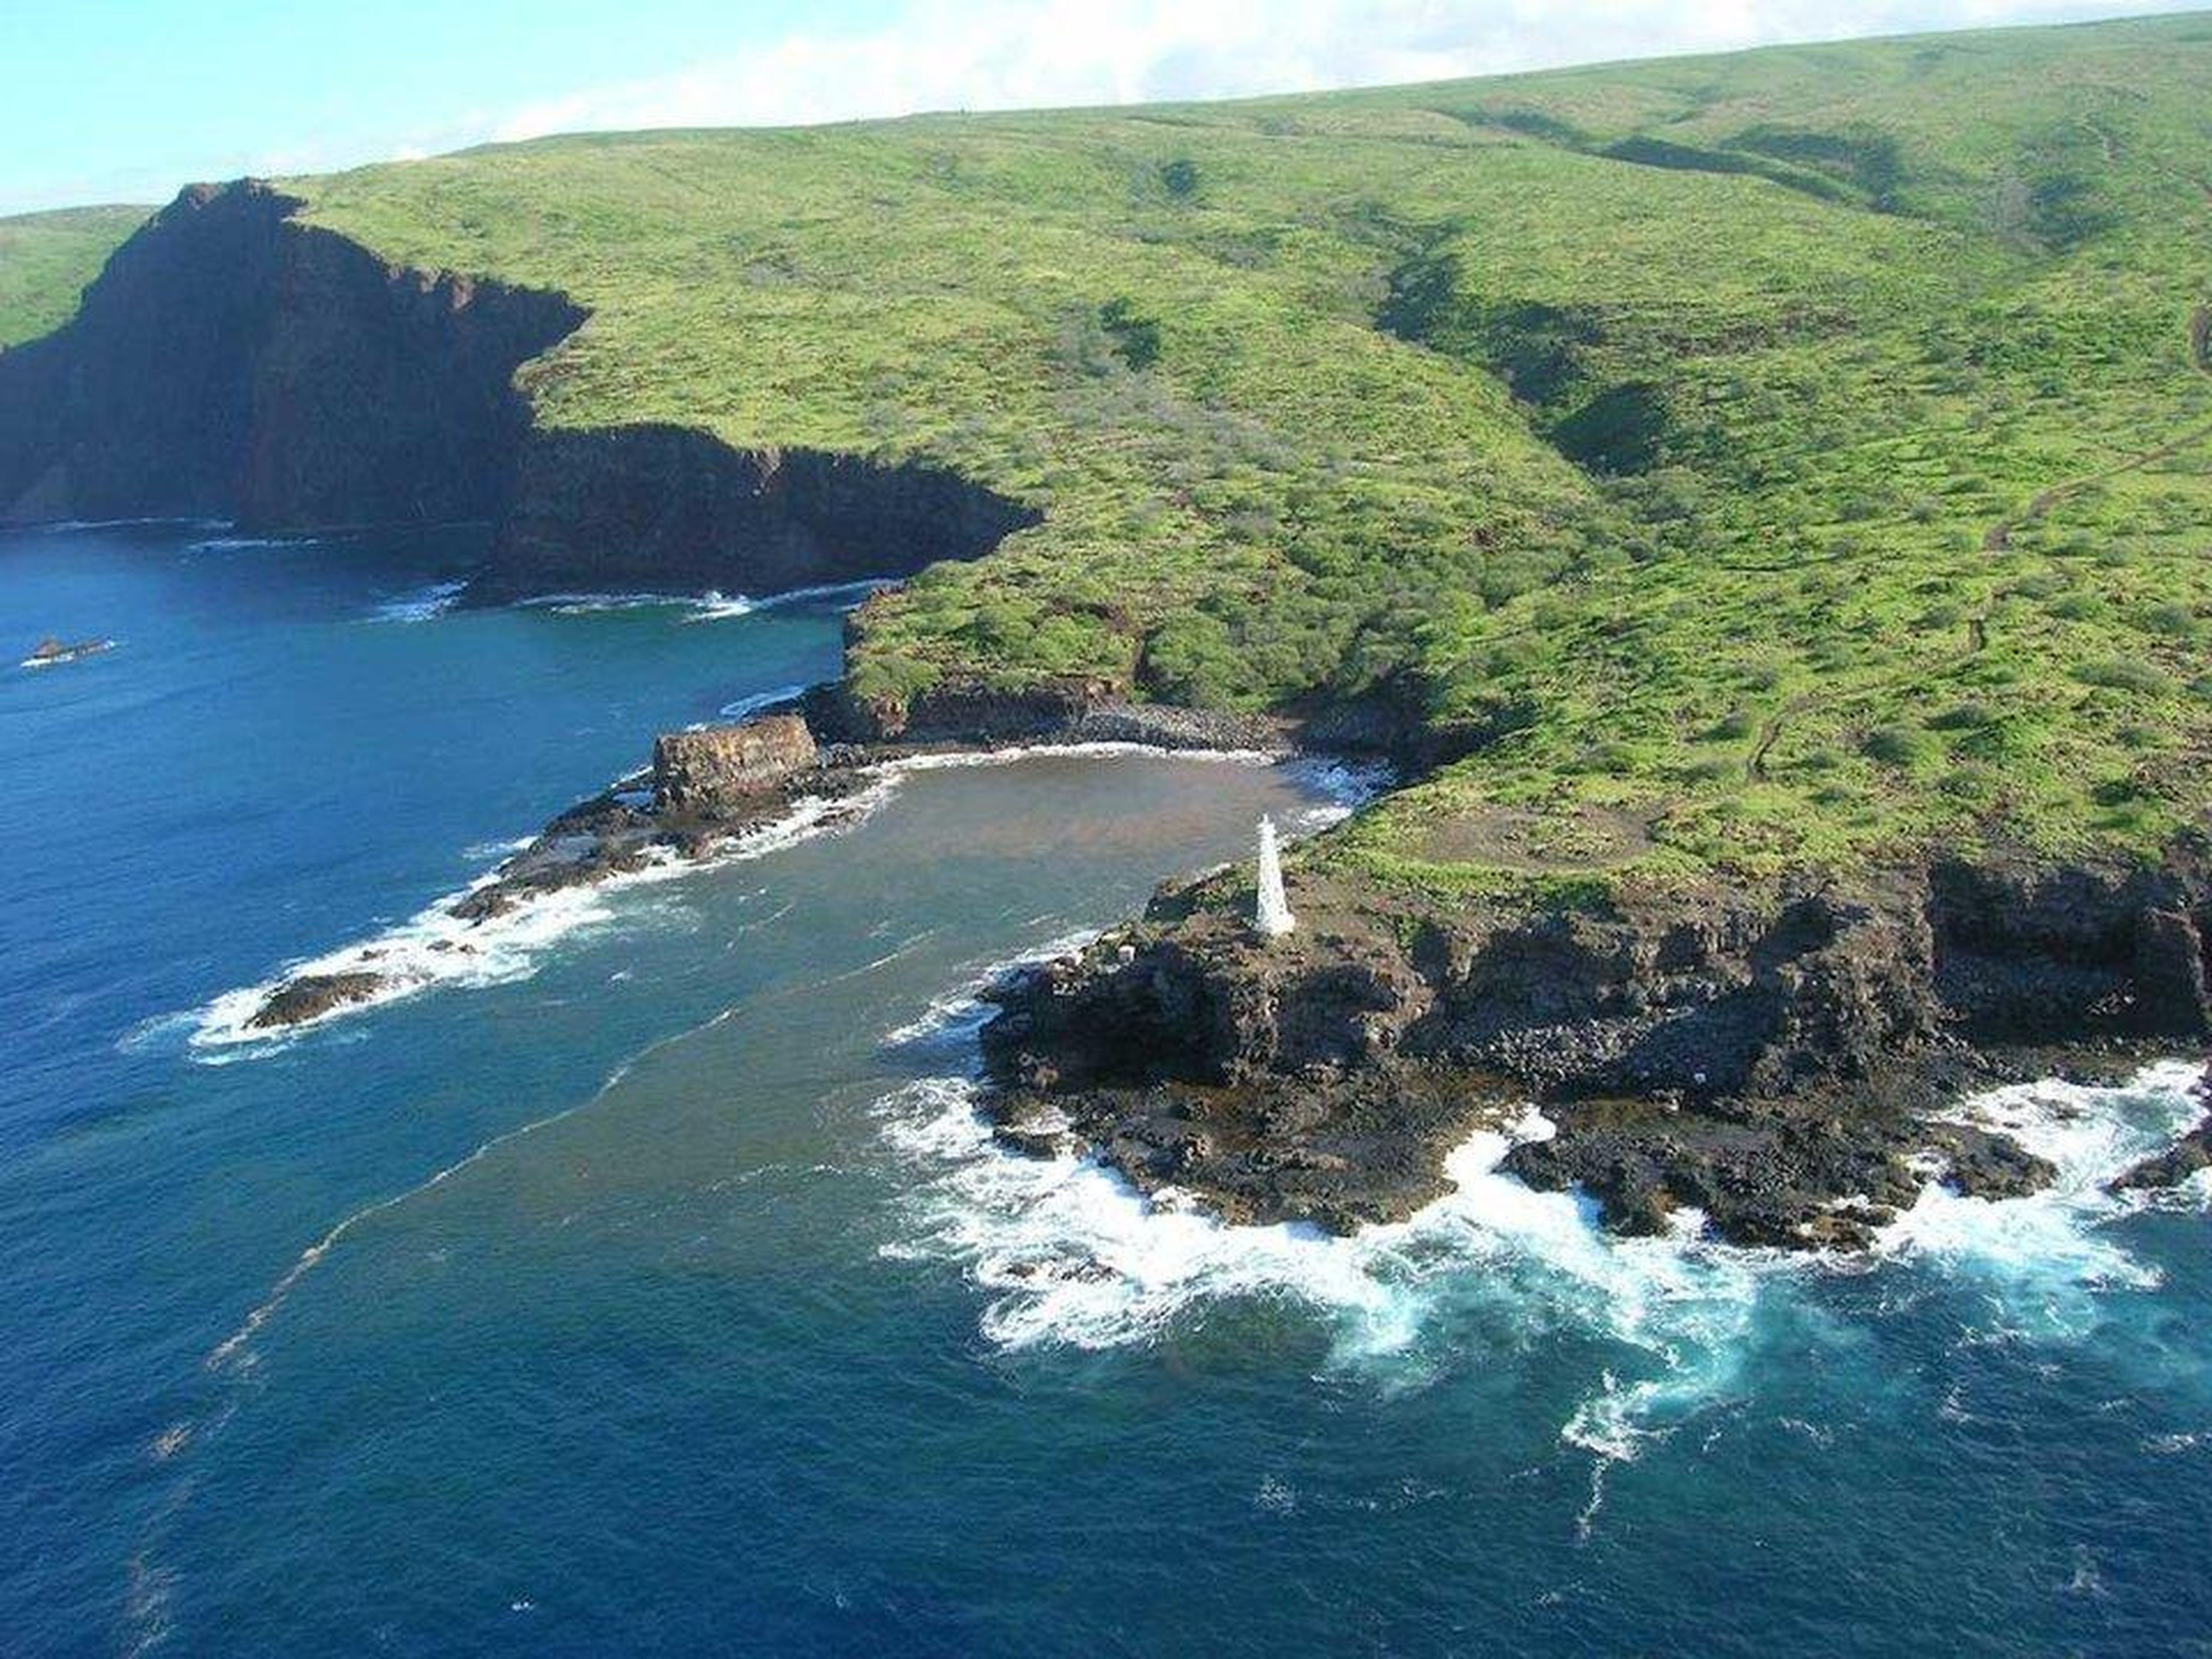 [RE] La compra más costosa de Ellison fue en 2012 cuando compró el 98% de la isla hawaiana de Lanai.